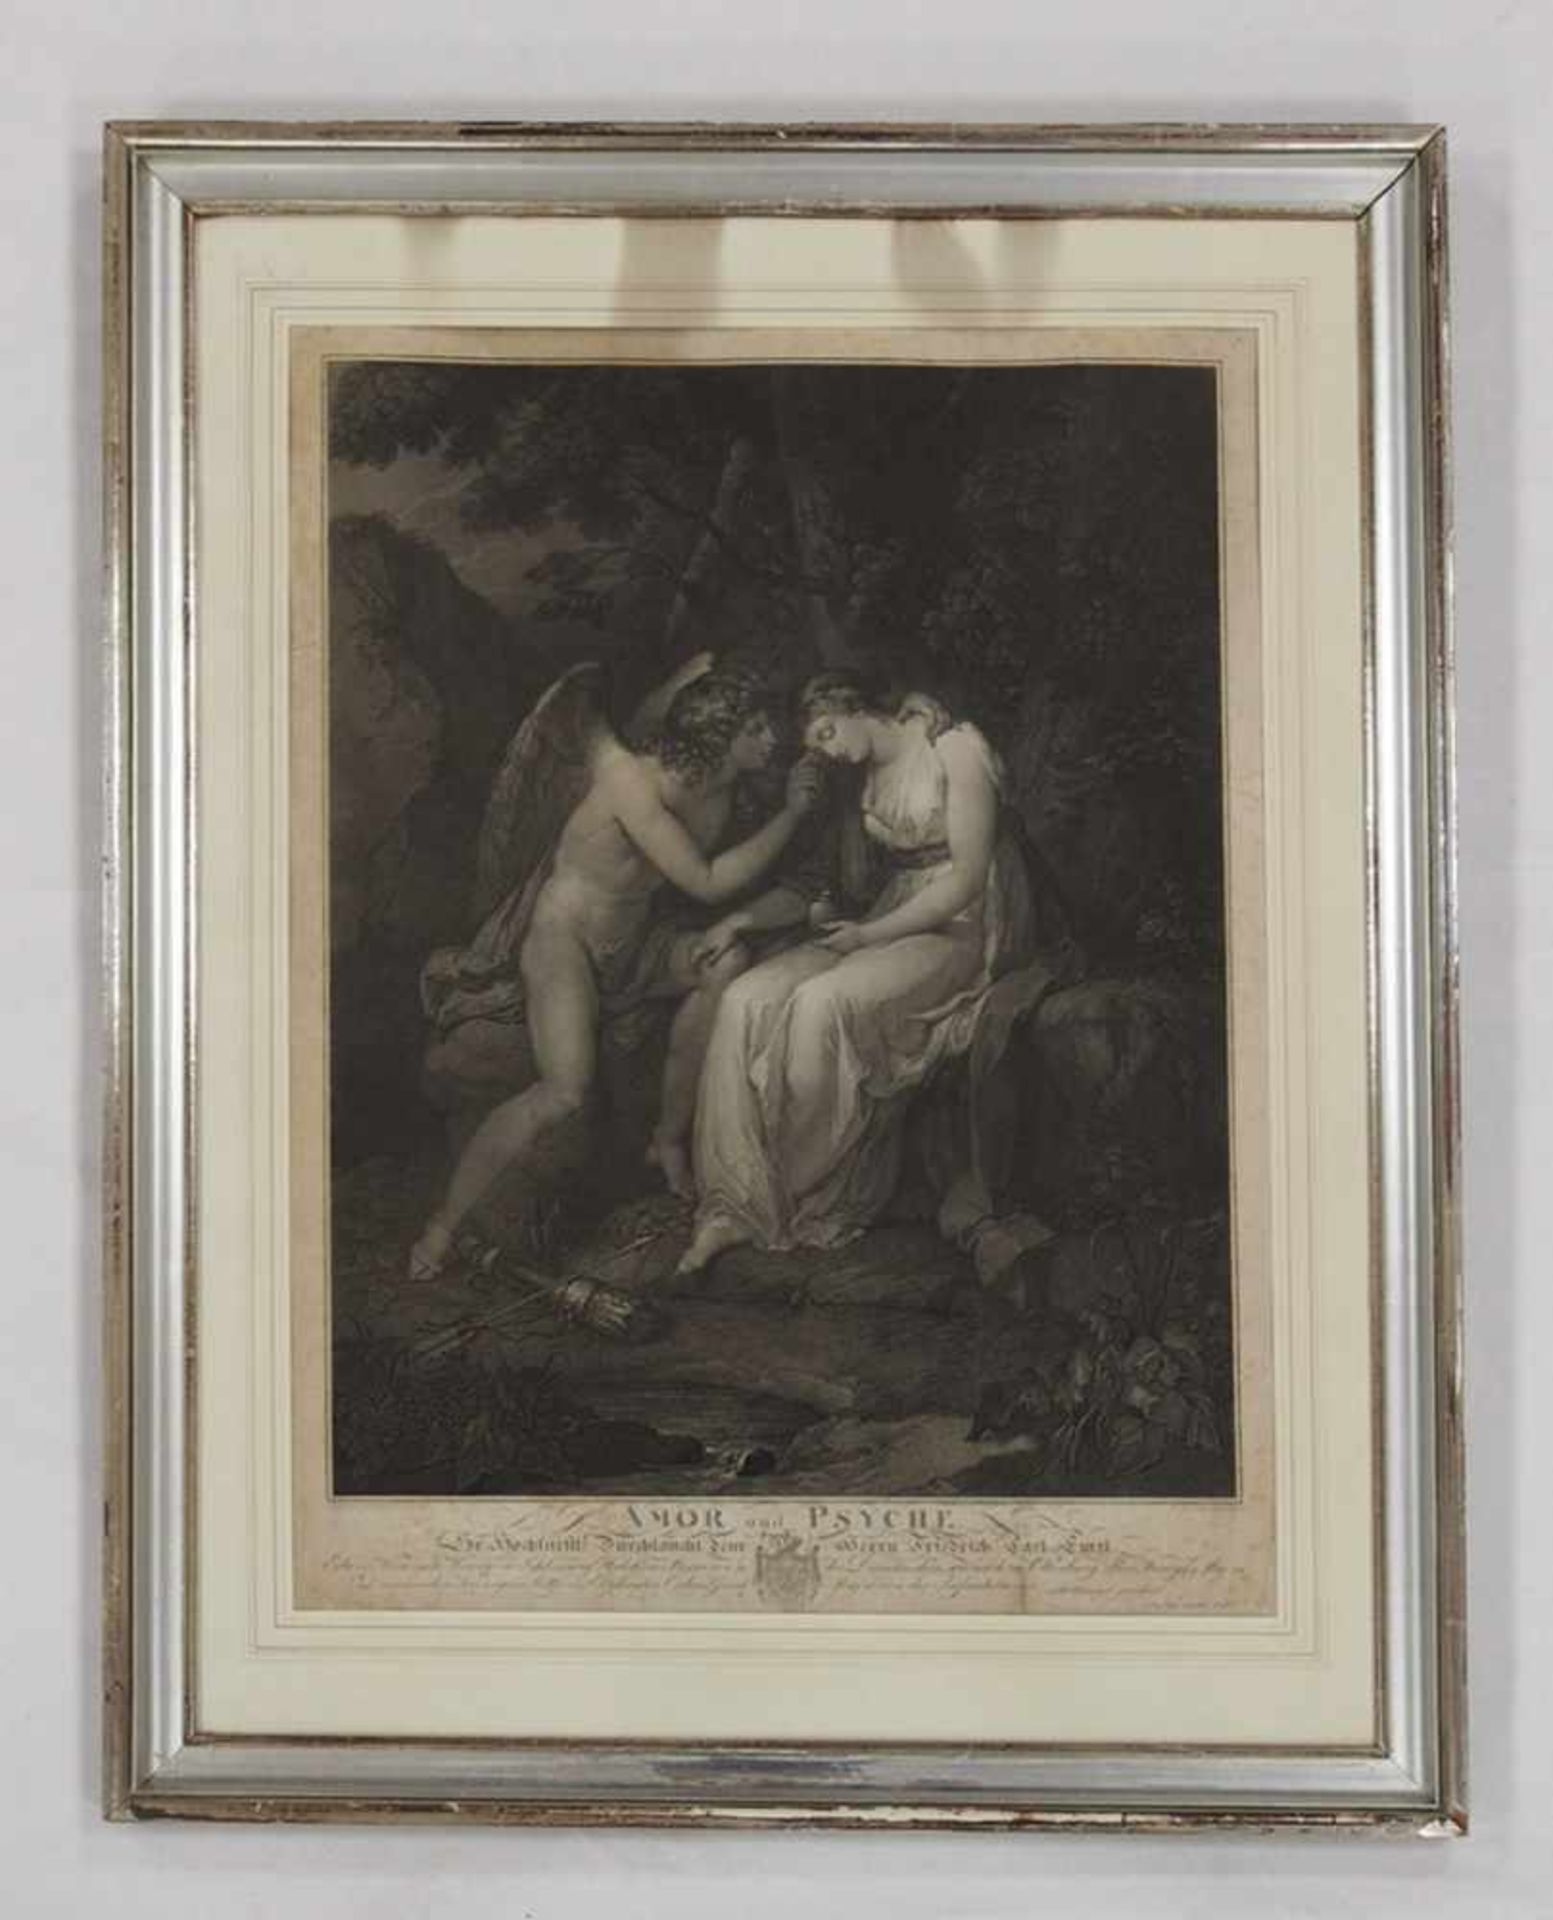 BUCHHORN, Ludwig1770-1856Amor und PsychePunktierstich (nach A. Kauffmann), 1804, 59 x 45 cm, gerahmt - Bild 2 aus 2